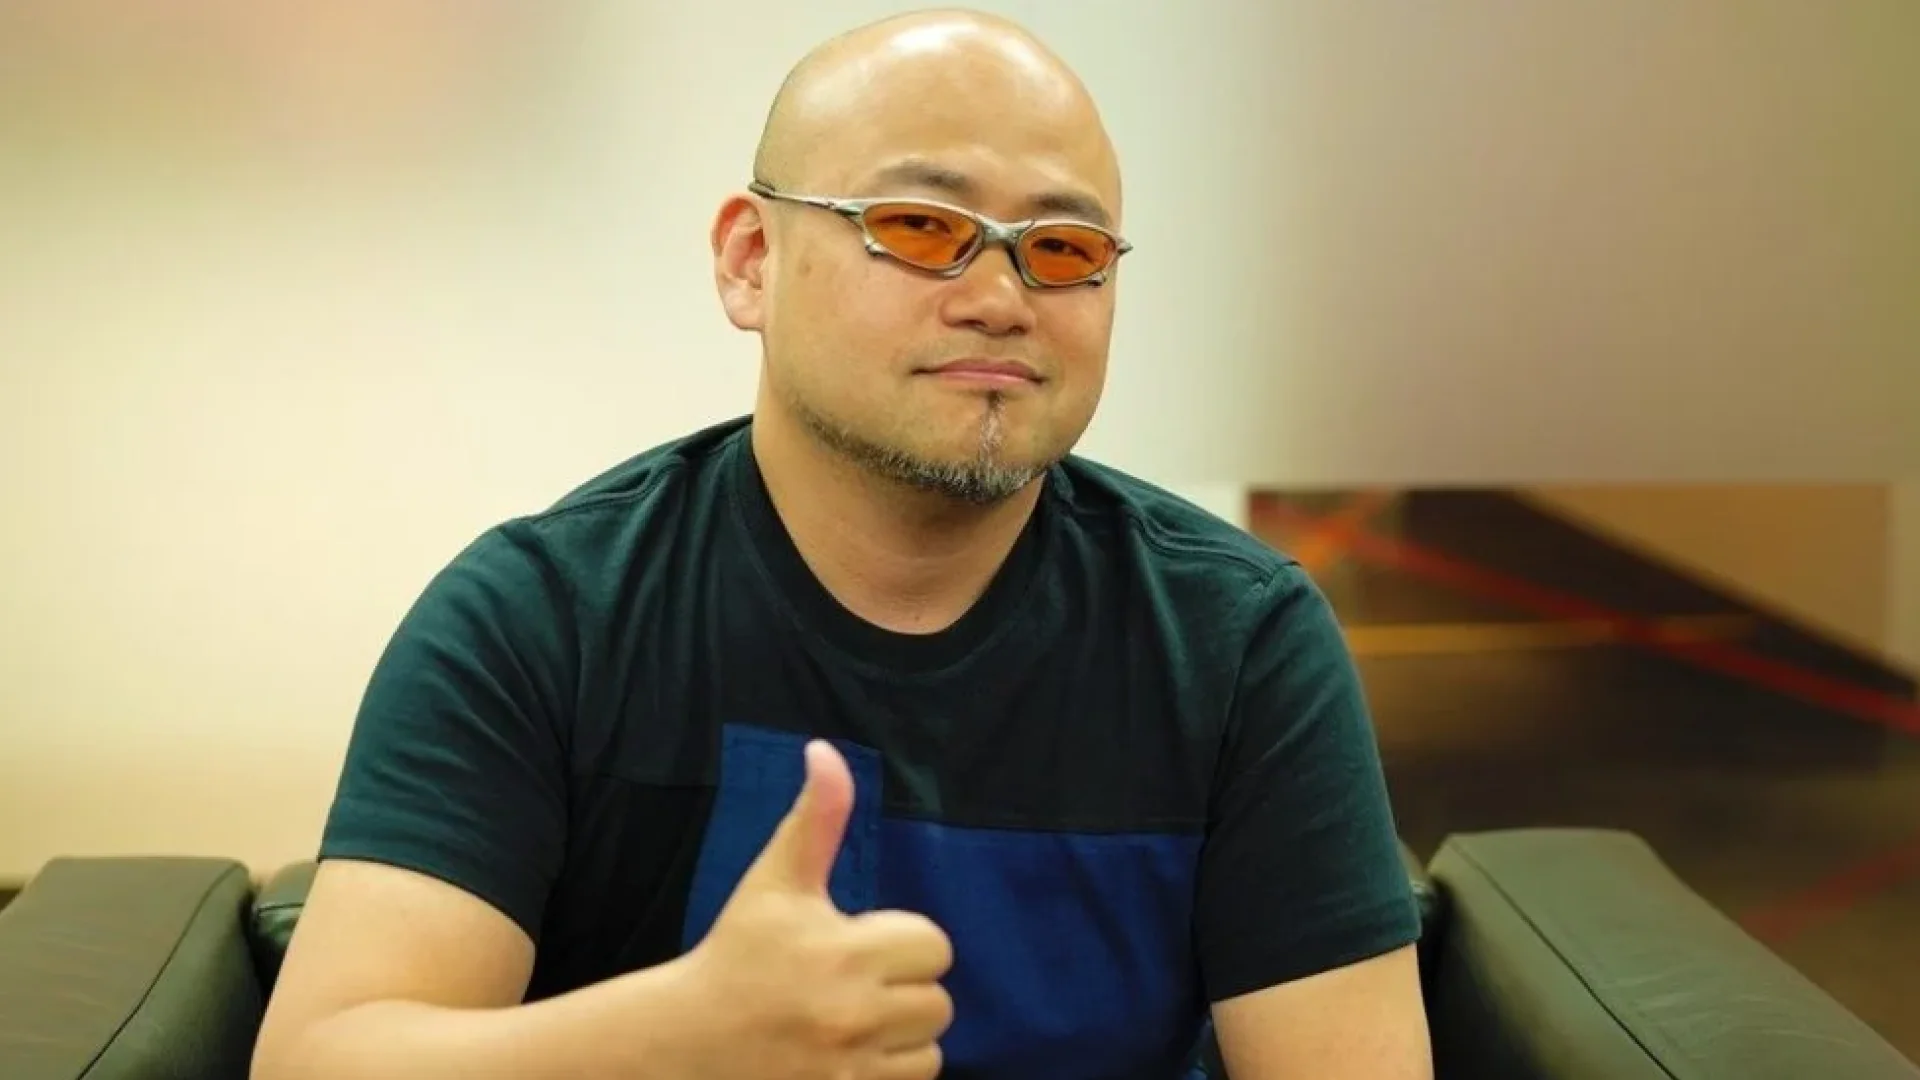 Bayonetta-Schöpfer Hideki Kamiya hat seinen eigenen YouTube-Kanal gegründet, nachdem er PlatinumGames verlassen hat